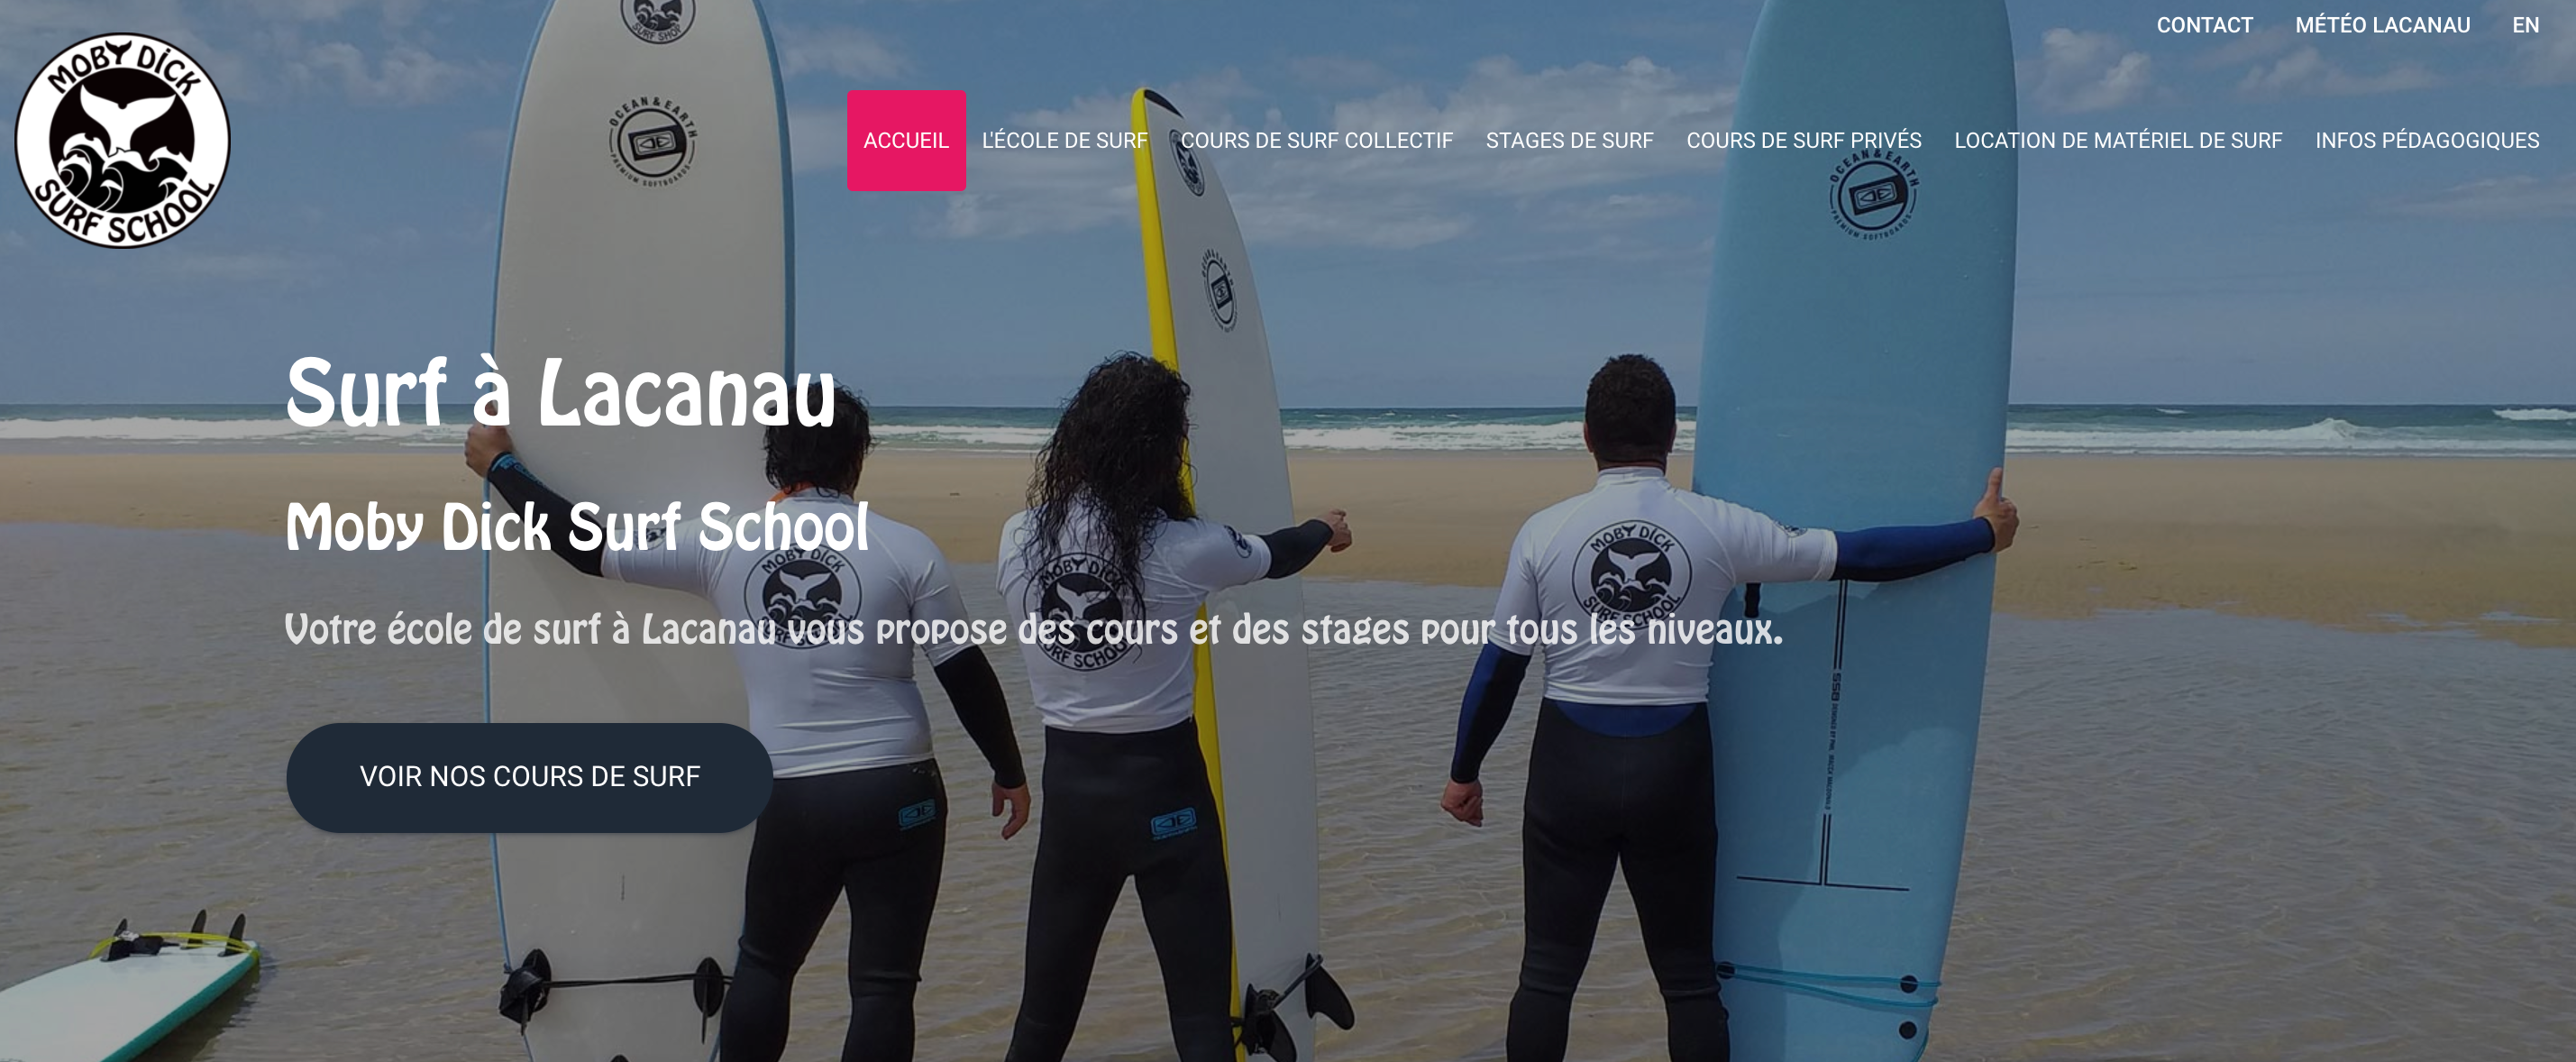 Découvrez Moby Dick Surf School : lécole de surf basée à Lacanau